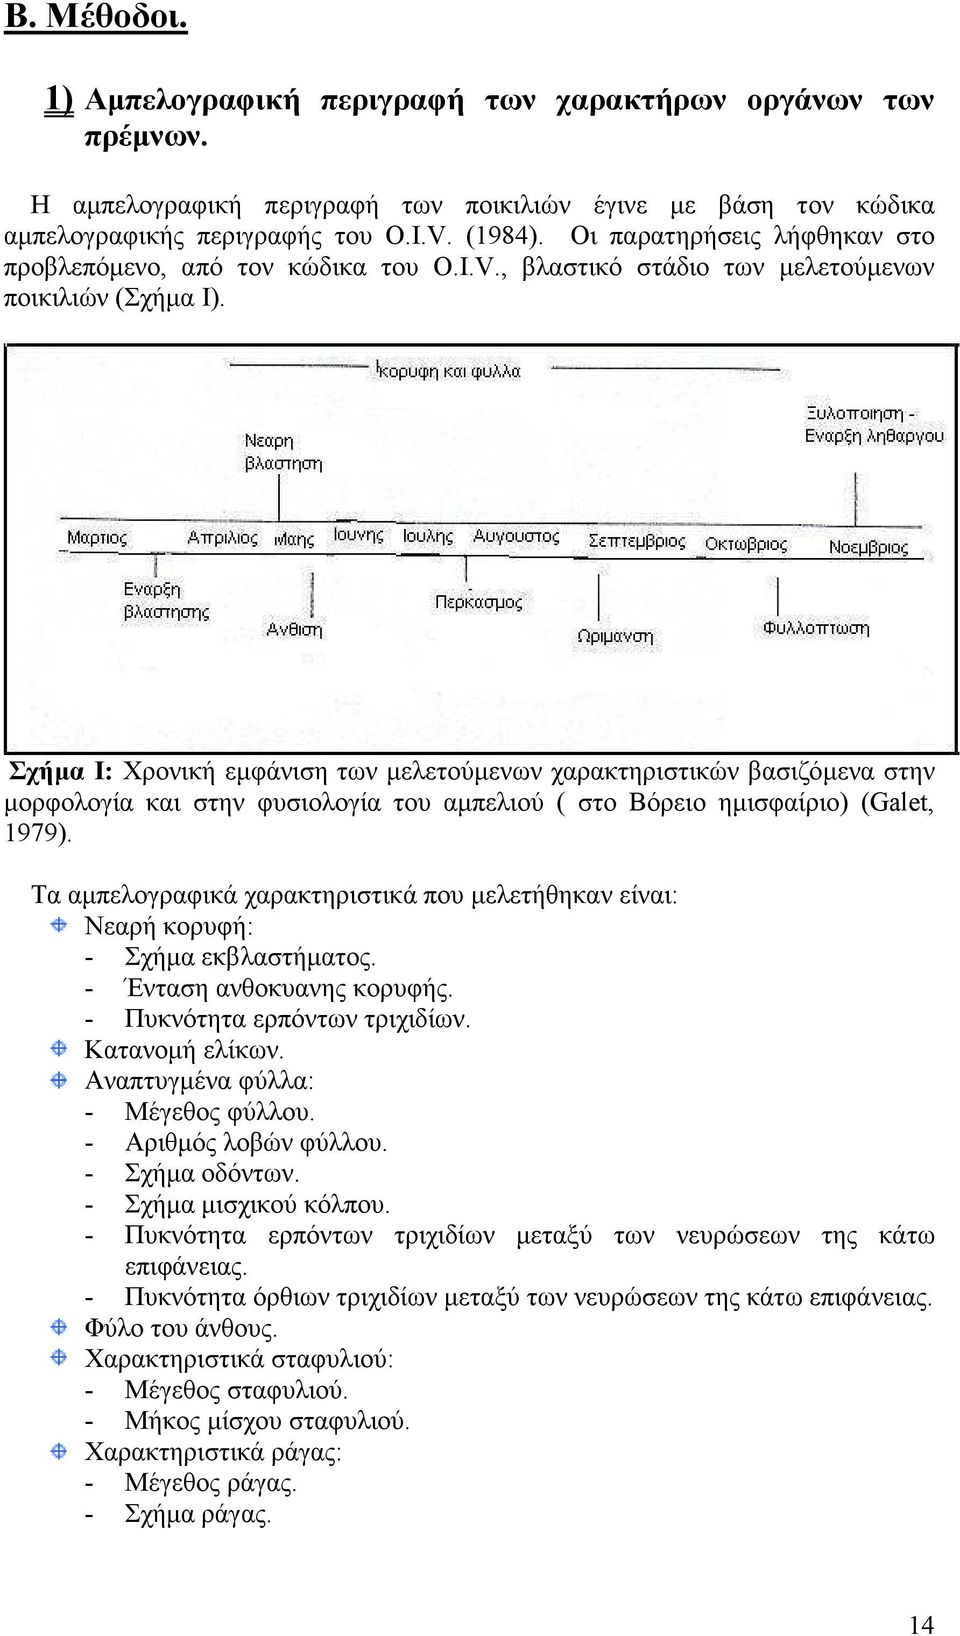 Σχήµα Ι: Χρονική εµφάνιση των µελετούµενων χαρακτηριστικών βασιζόµενα στην µορφολογία και στην φυσιολογία του αµπελιού ( στο Βόρειο ηµισφαίριο) (Galet, 1979).